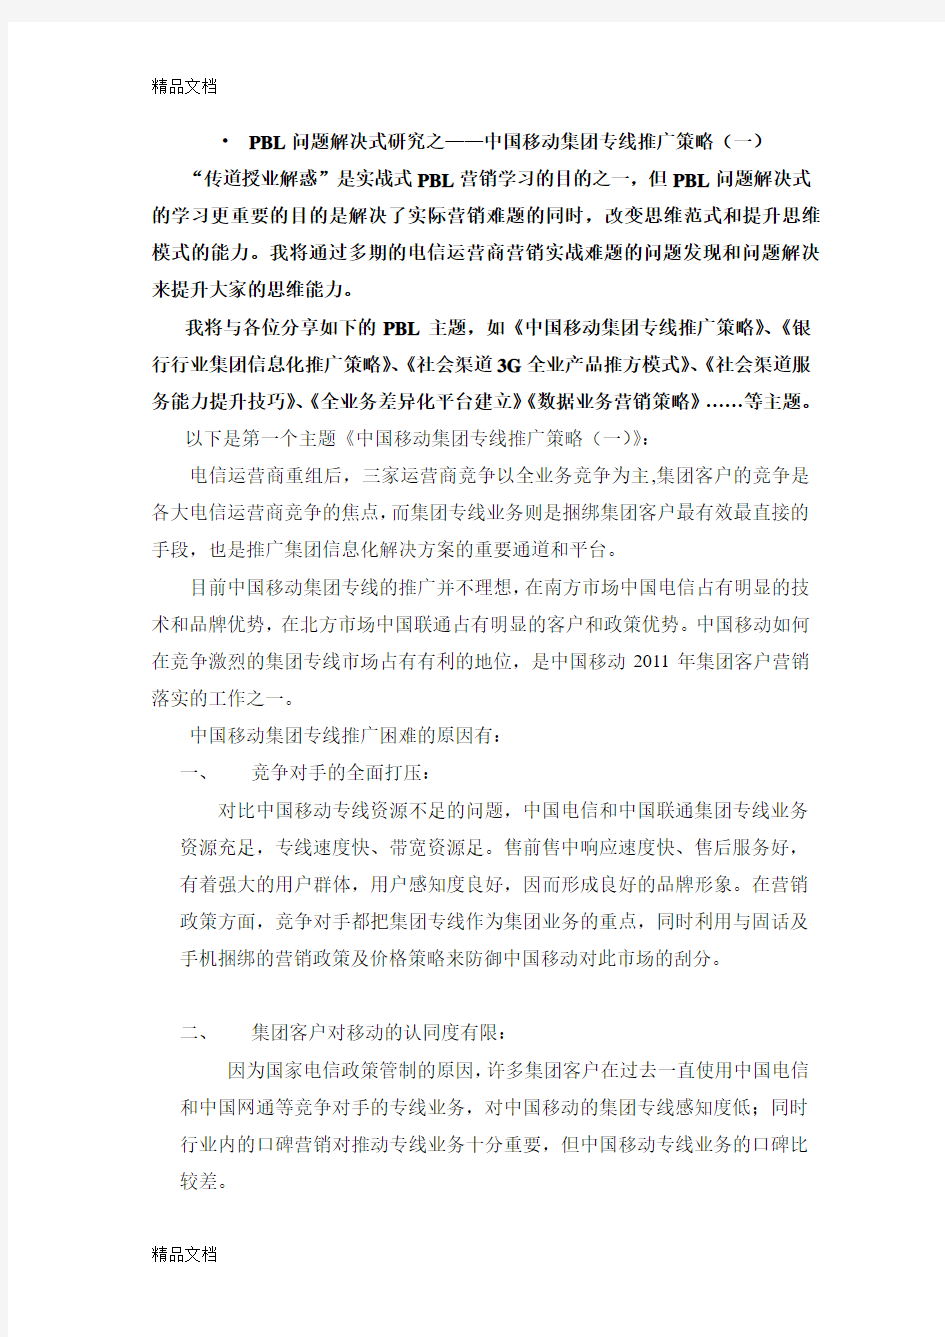 中国移动集团专线推广策略(梁宇亮老师品牌文章).教学文案